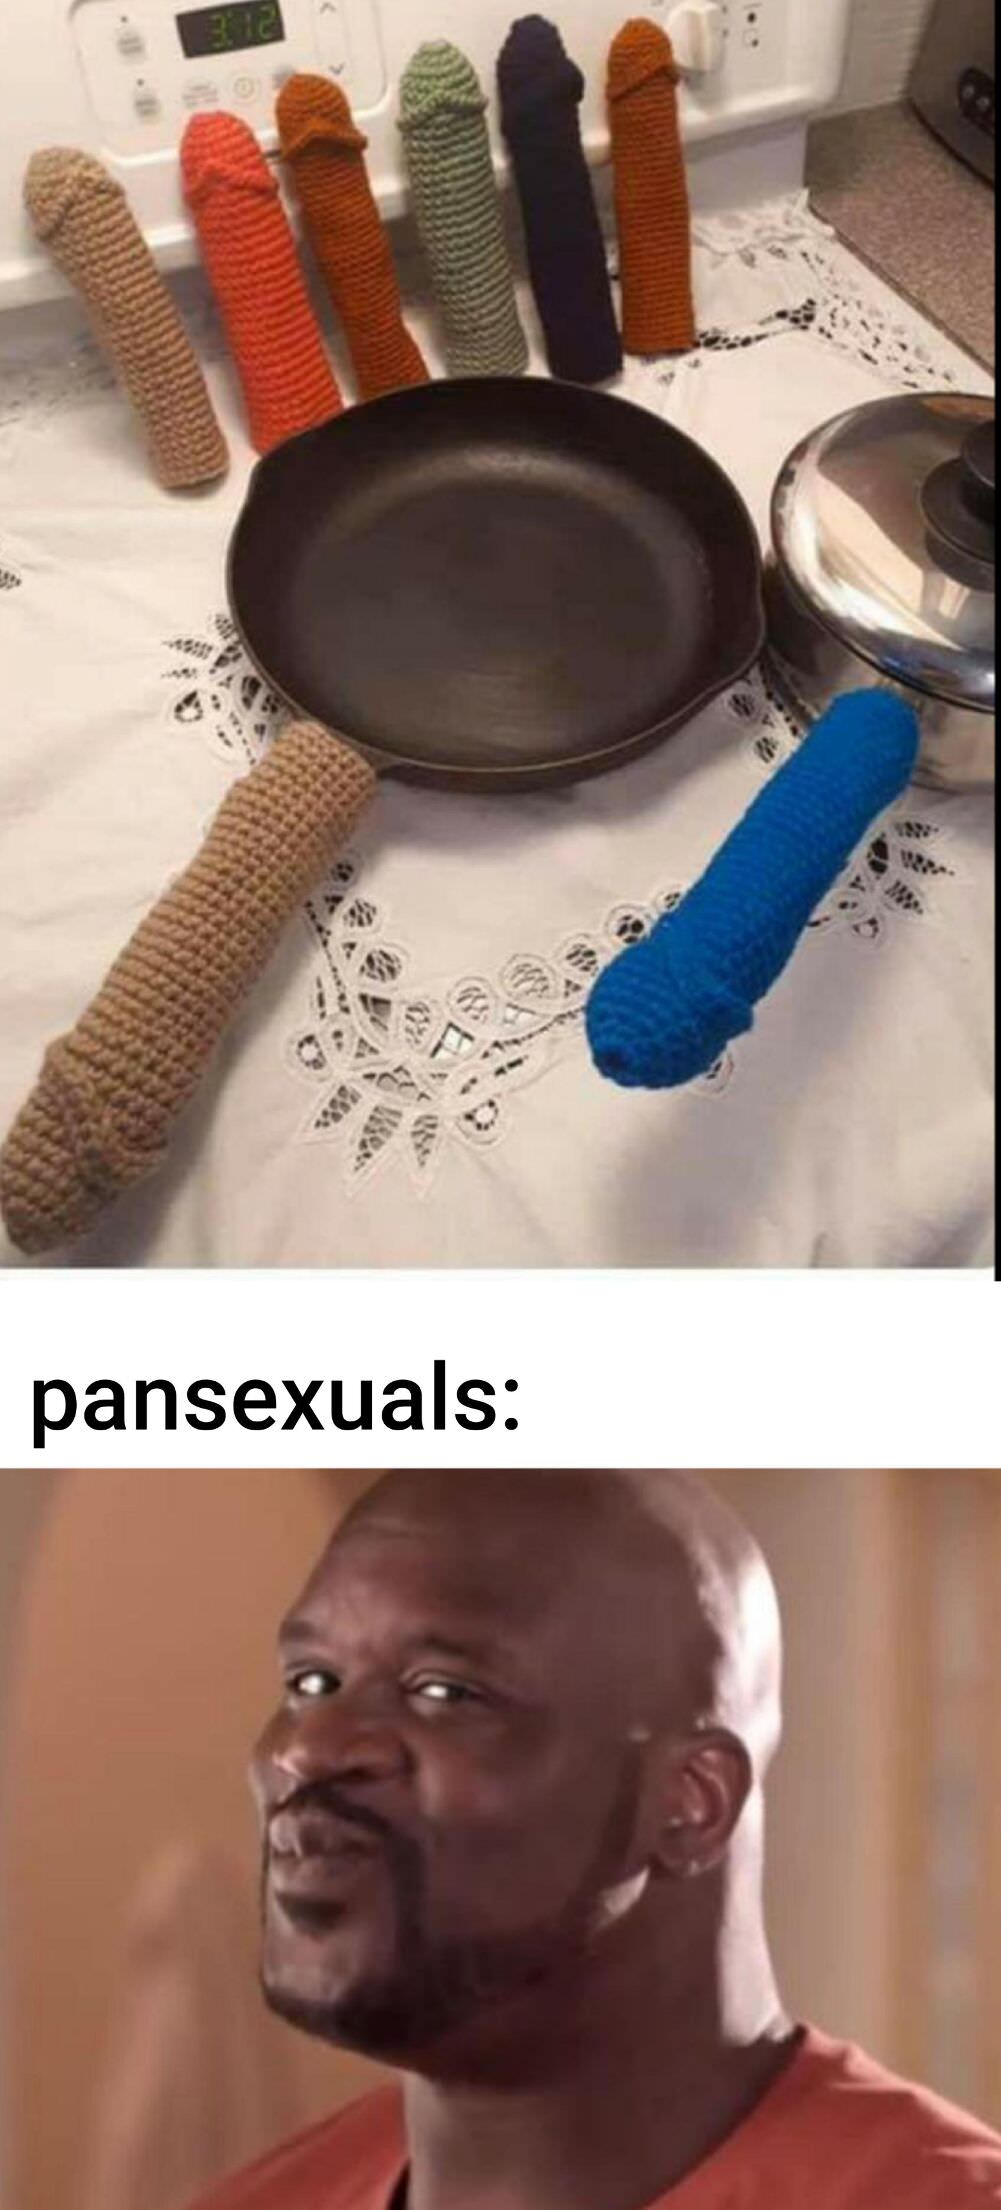 pansexuals